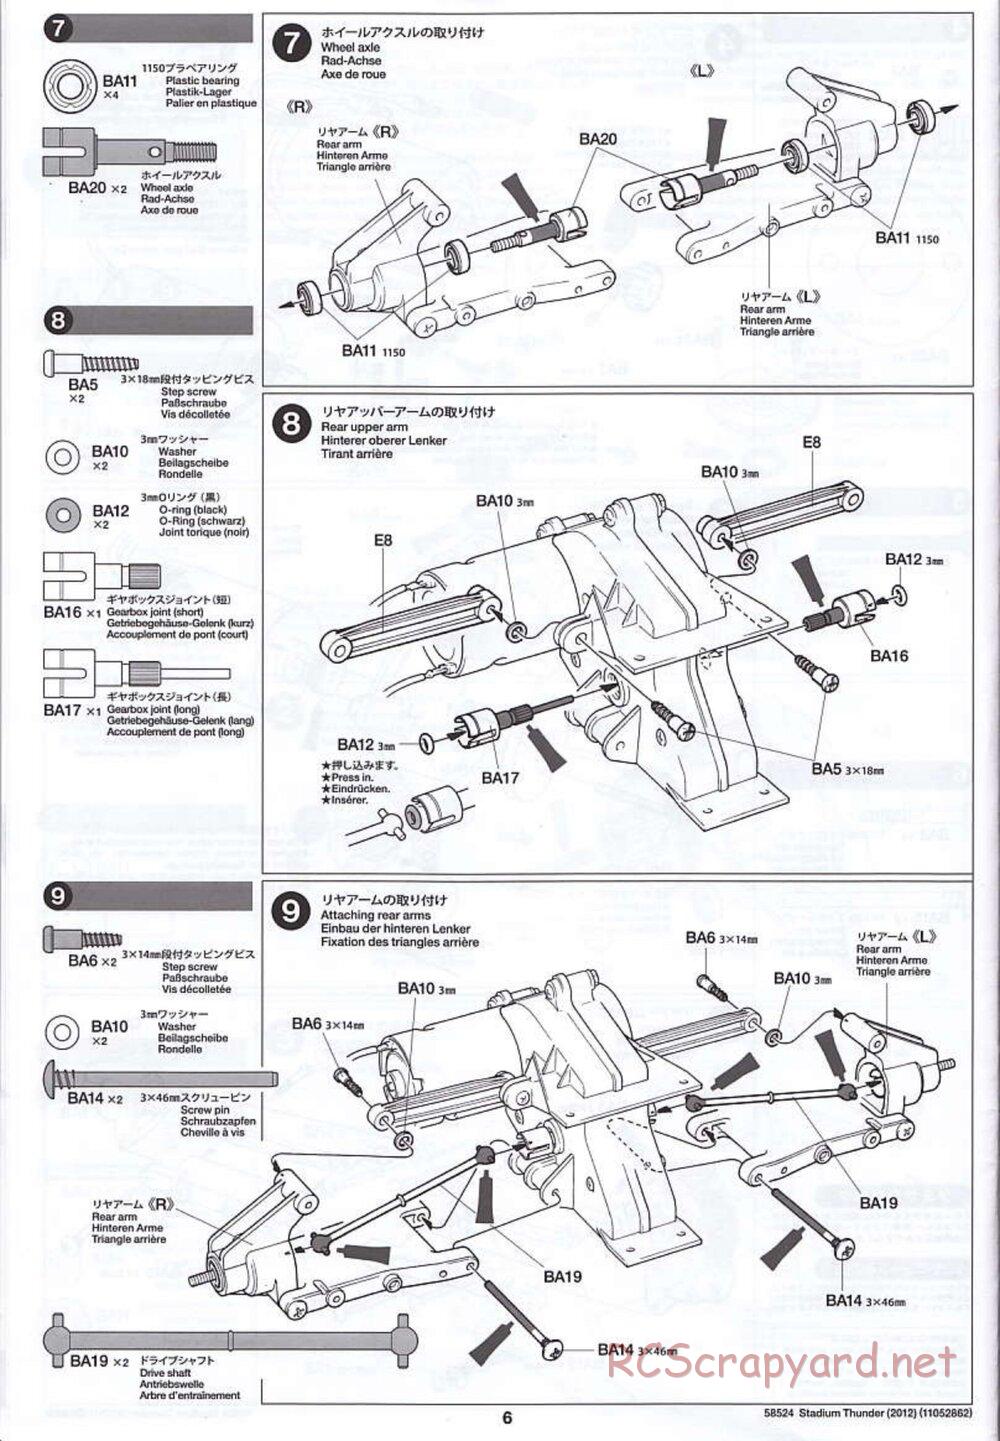 Tamiya - Stadium Thunder 2012 - FAL Chassis - Manual - Page 6